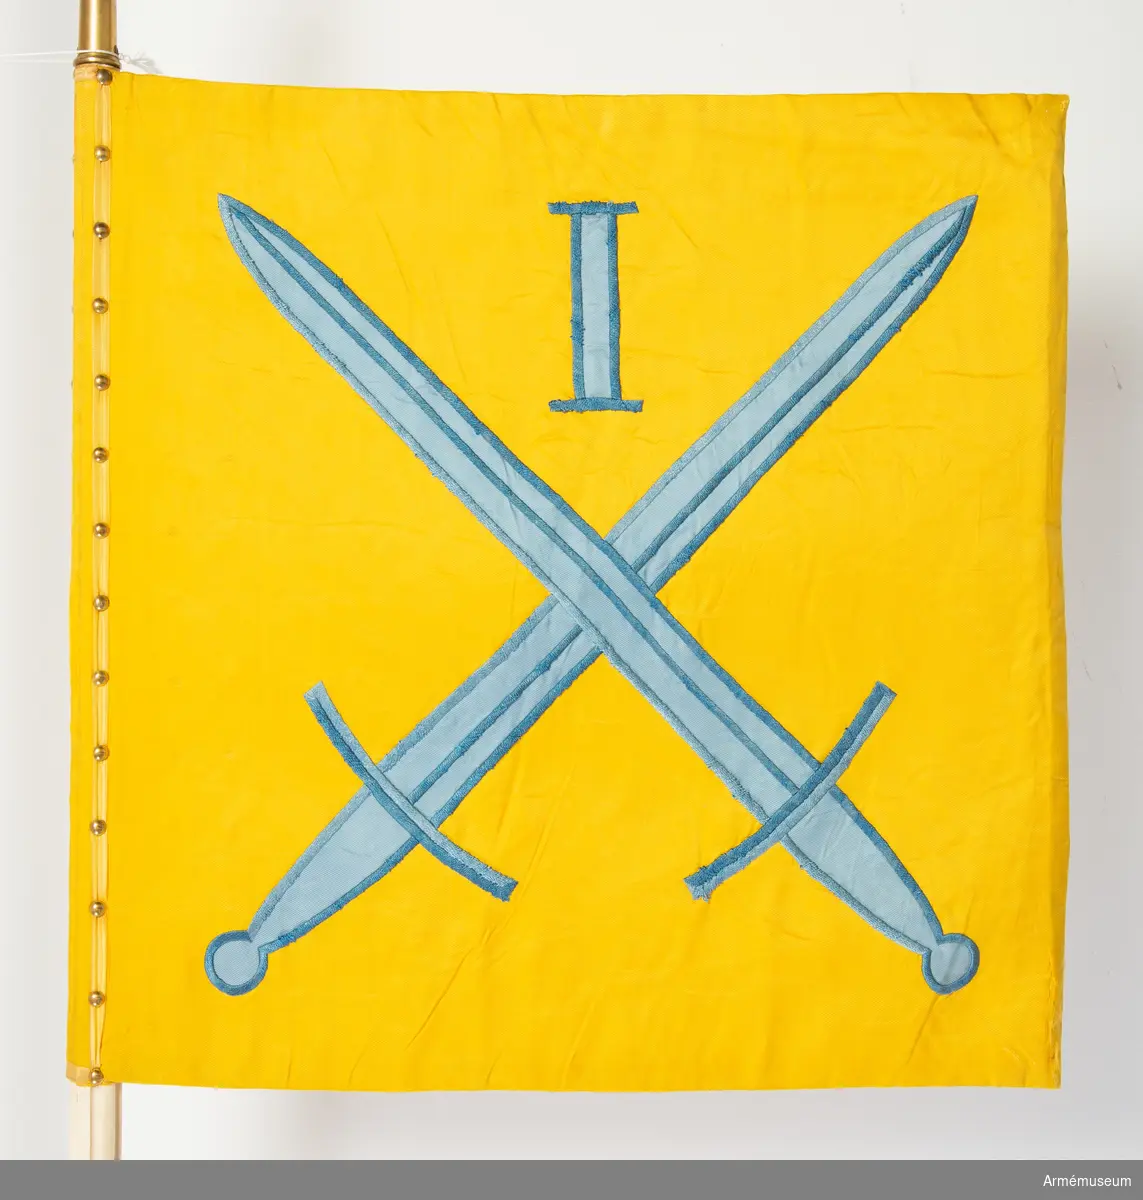 Kommandotecken för Södra militärområdet (ursprungligen Första militärområdet), i gult siden med applikation i blått siden med broderi i blått silkegarn.
På gul botten två blå korslagda svärd under den romerska siffran 1. Vit stång med kannelyrer och spets av mässing.